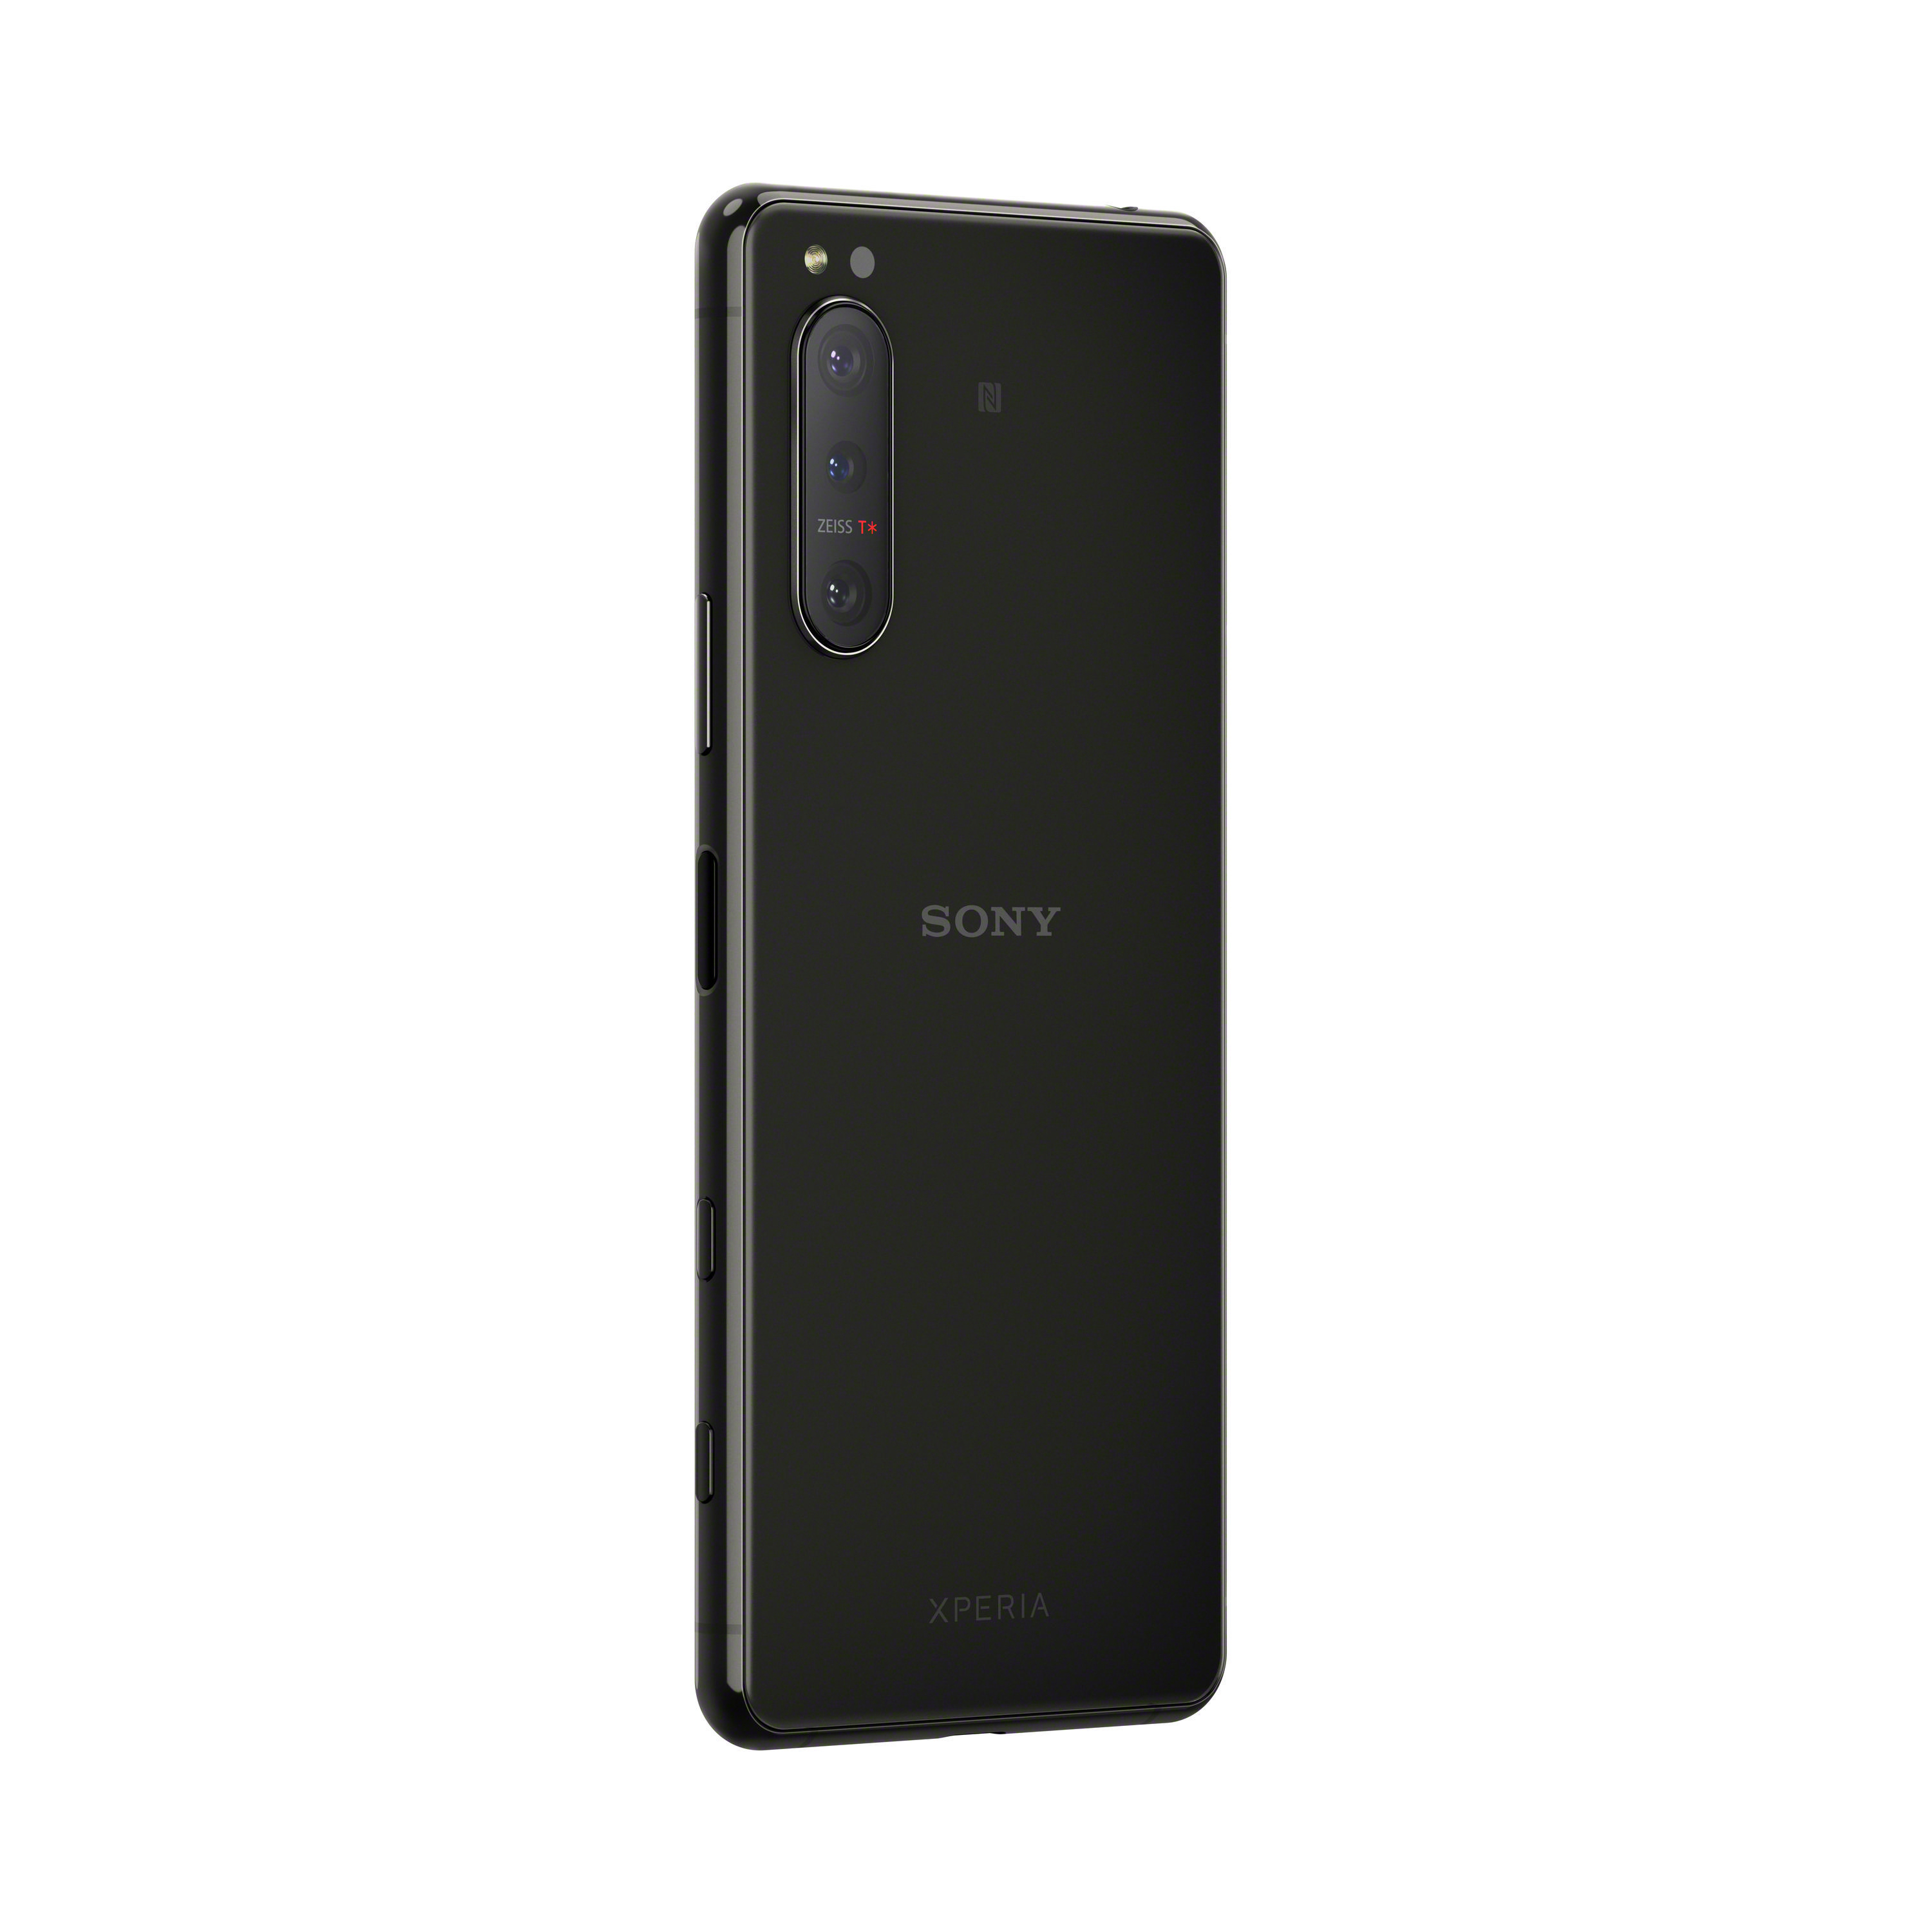 SONY Xperia II Dual 128 5 SIM Schwarz GB 21:9 Display 5G